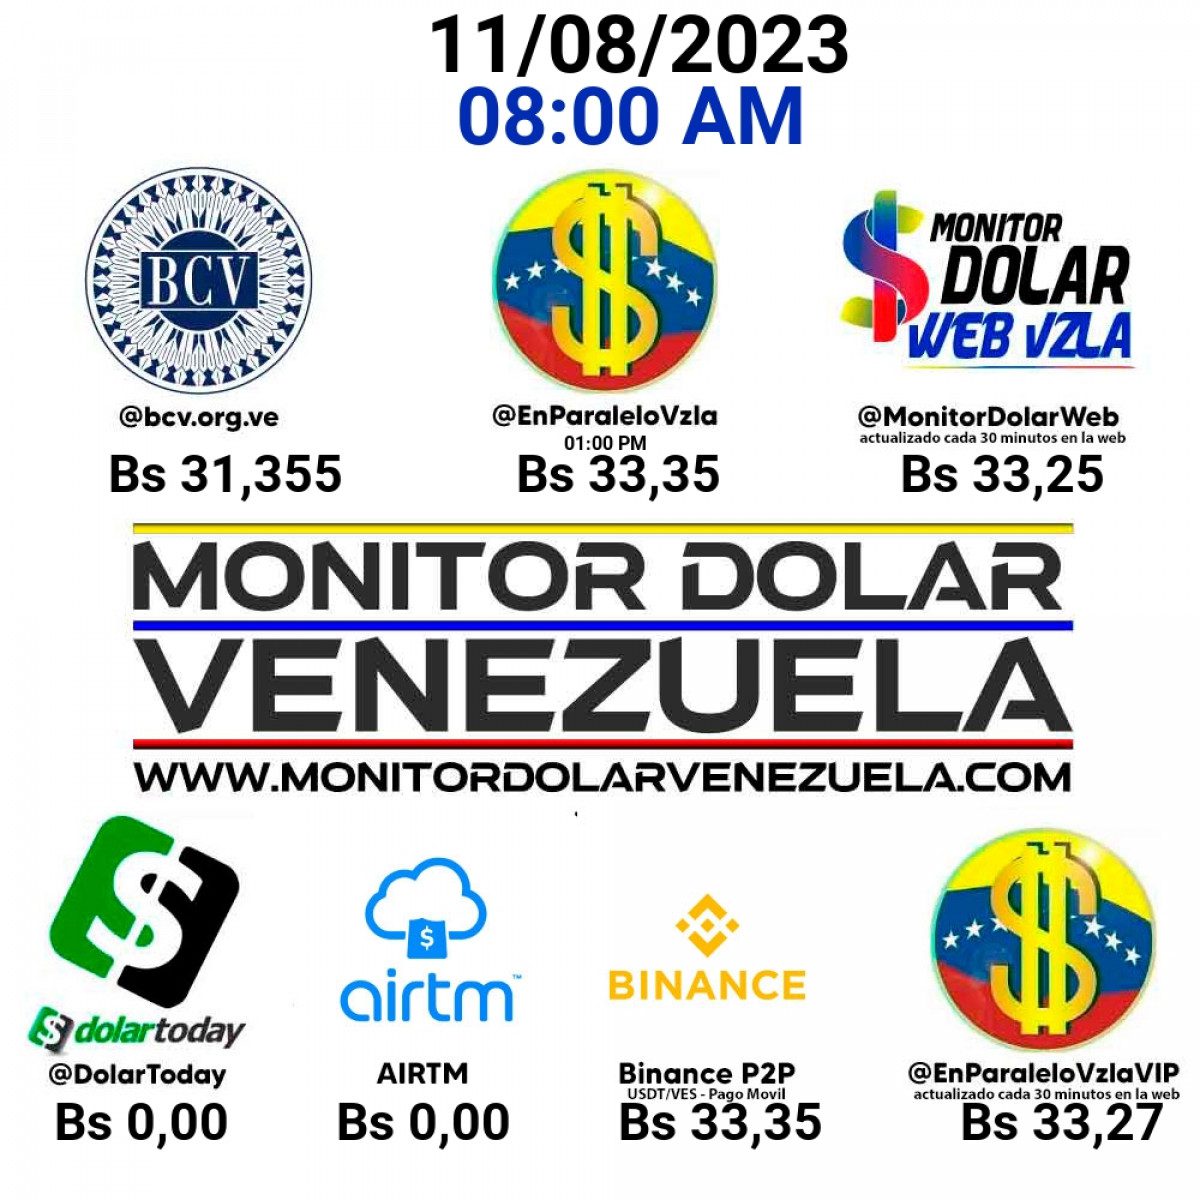 dolartoday en venezuela precio del dolar este viernes 11 de agosto de 2023 laverdaddemonagas.com monito1